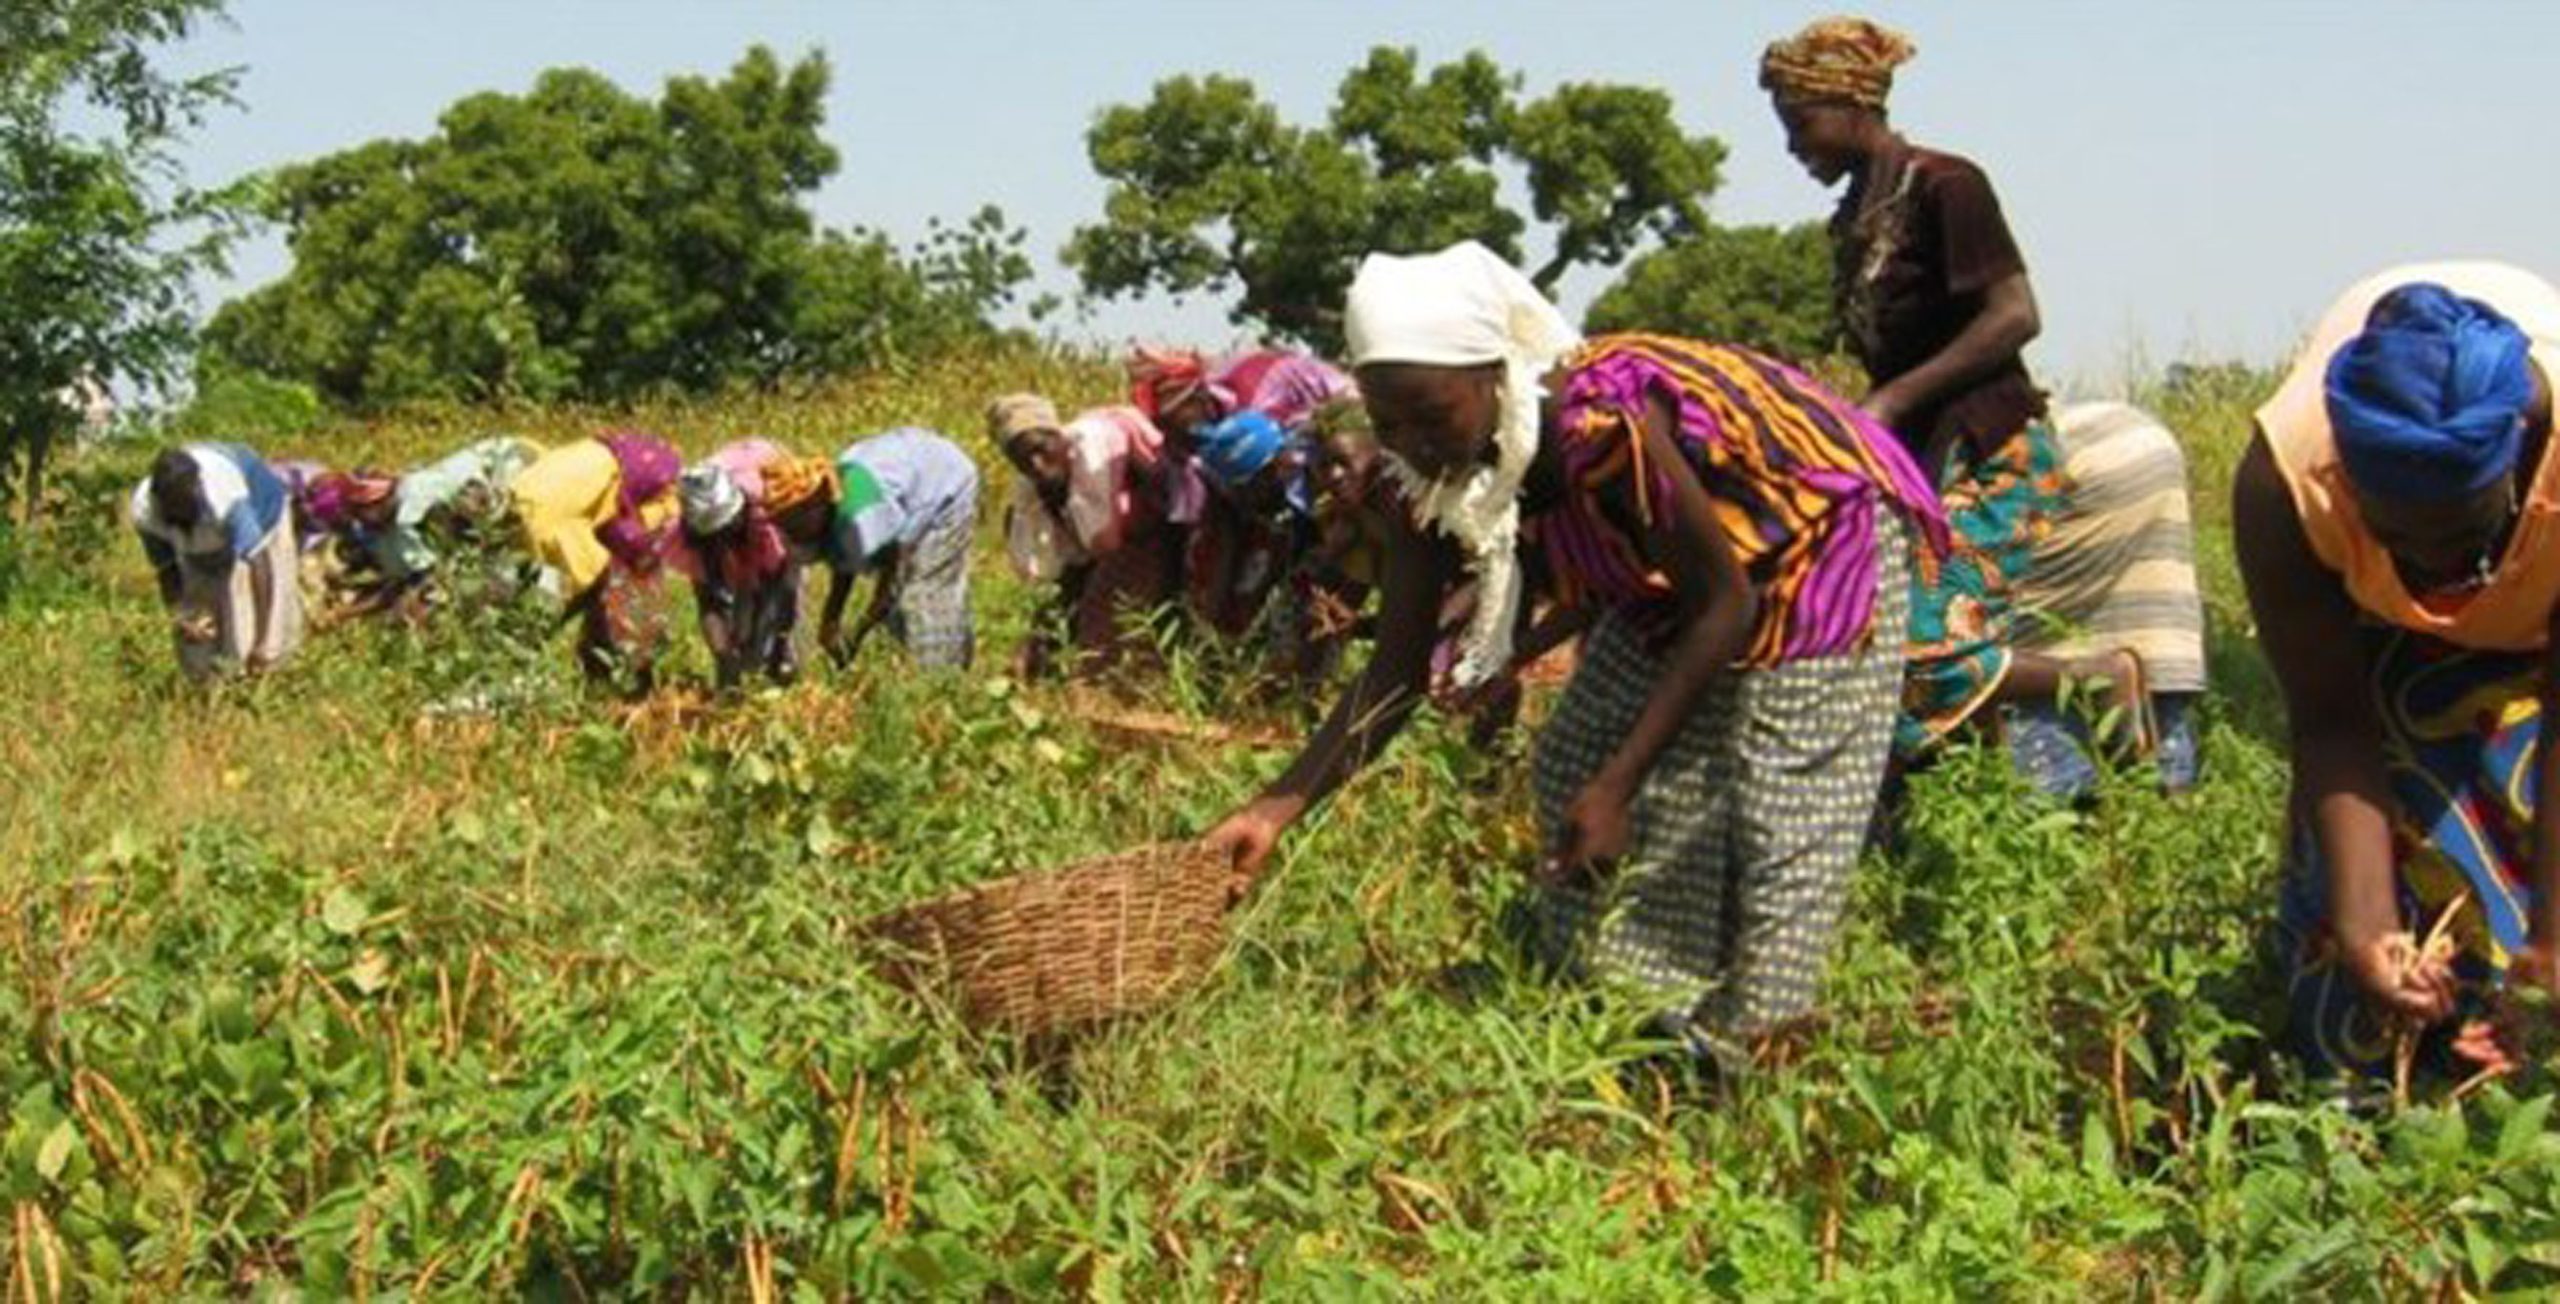 ANOLF TOSCANA Progetto “Resilience , sviluppo rurale ed imprenditorialità femminile nella regione di Keffrine, Senegal” . Finanziato dalla Regione Toscana attraverso il Bando di Progetti 2020/2021.